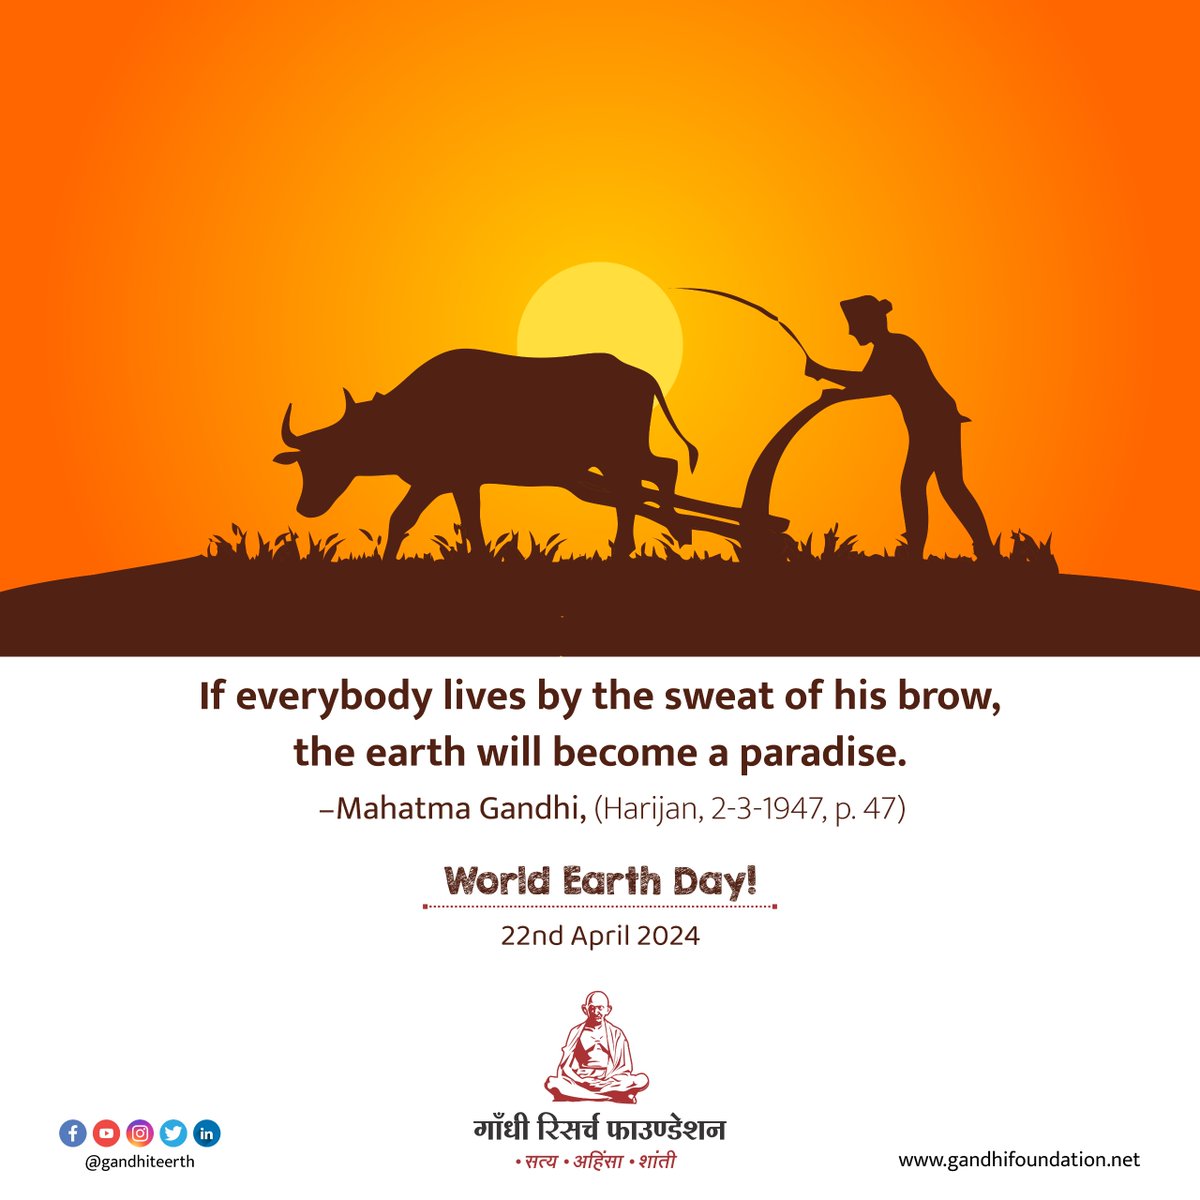 #worldearthday #gandhi #mkg #mkgandhi #mahatma #gandhiresearchfoundation #gandhiteerth